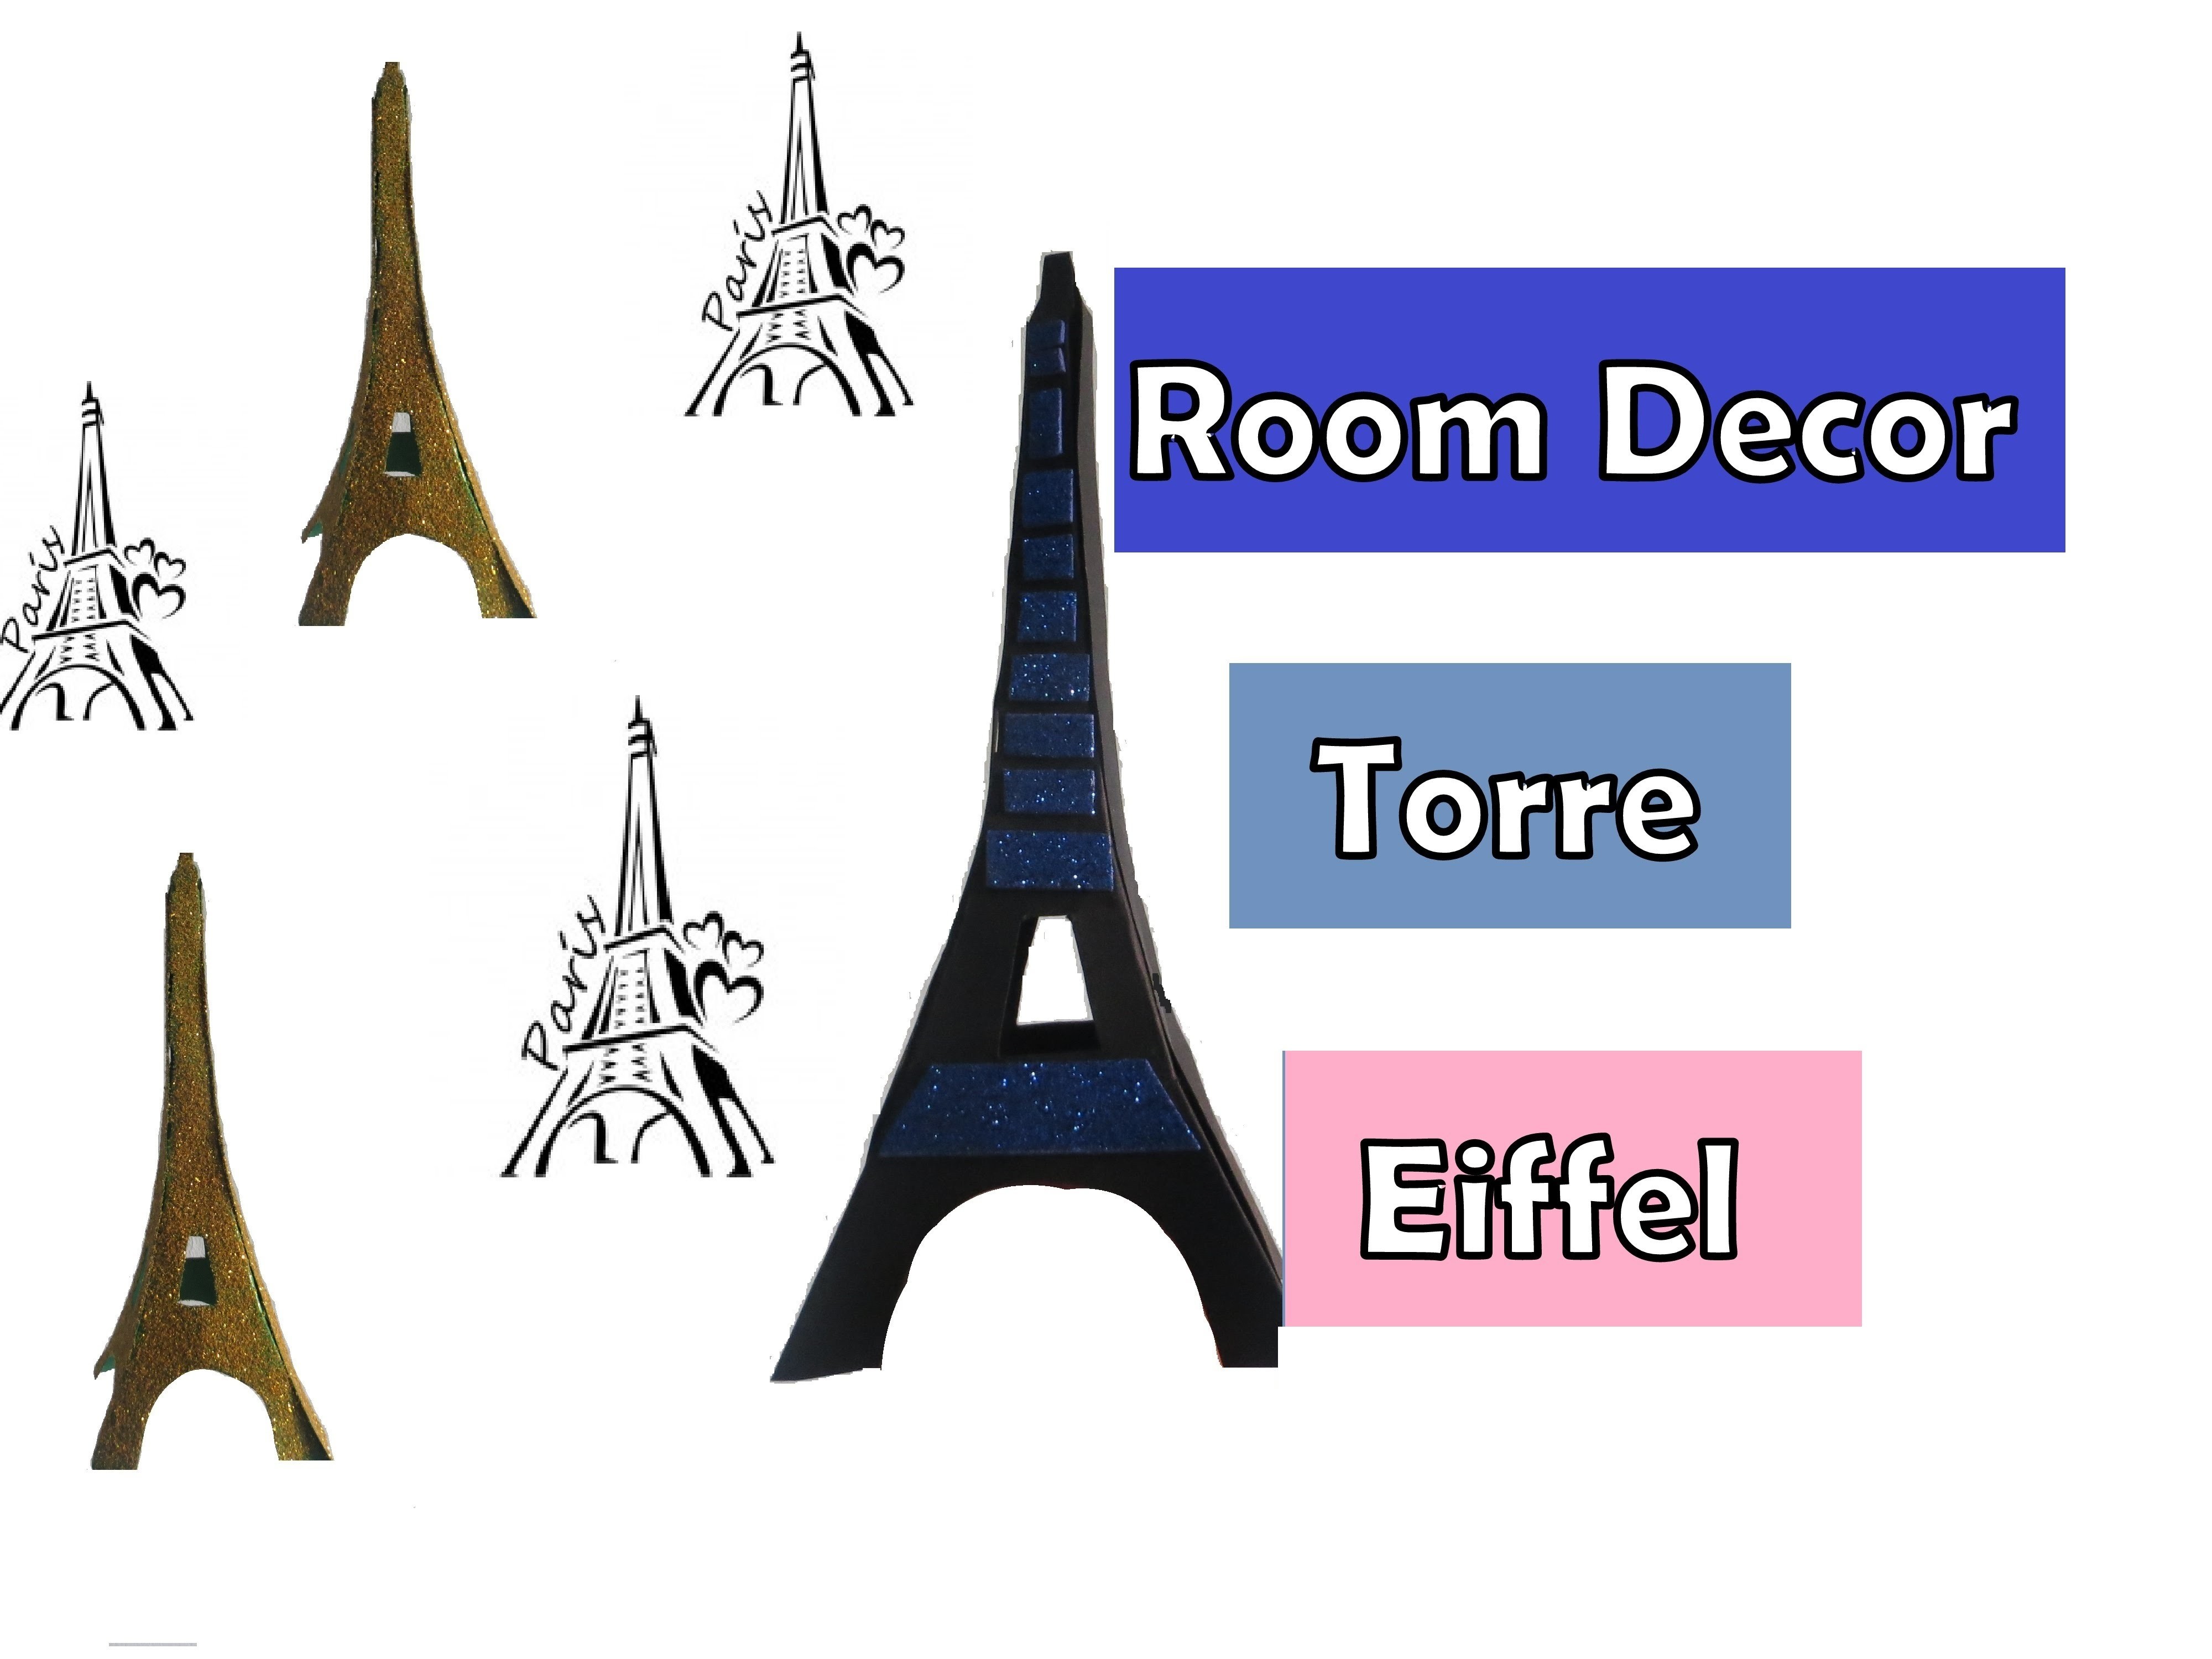 Manualidades -  Diy Torre Eiffel  decoracion -  Diy super facil! Eiffel tower Diy  easy room decor!